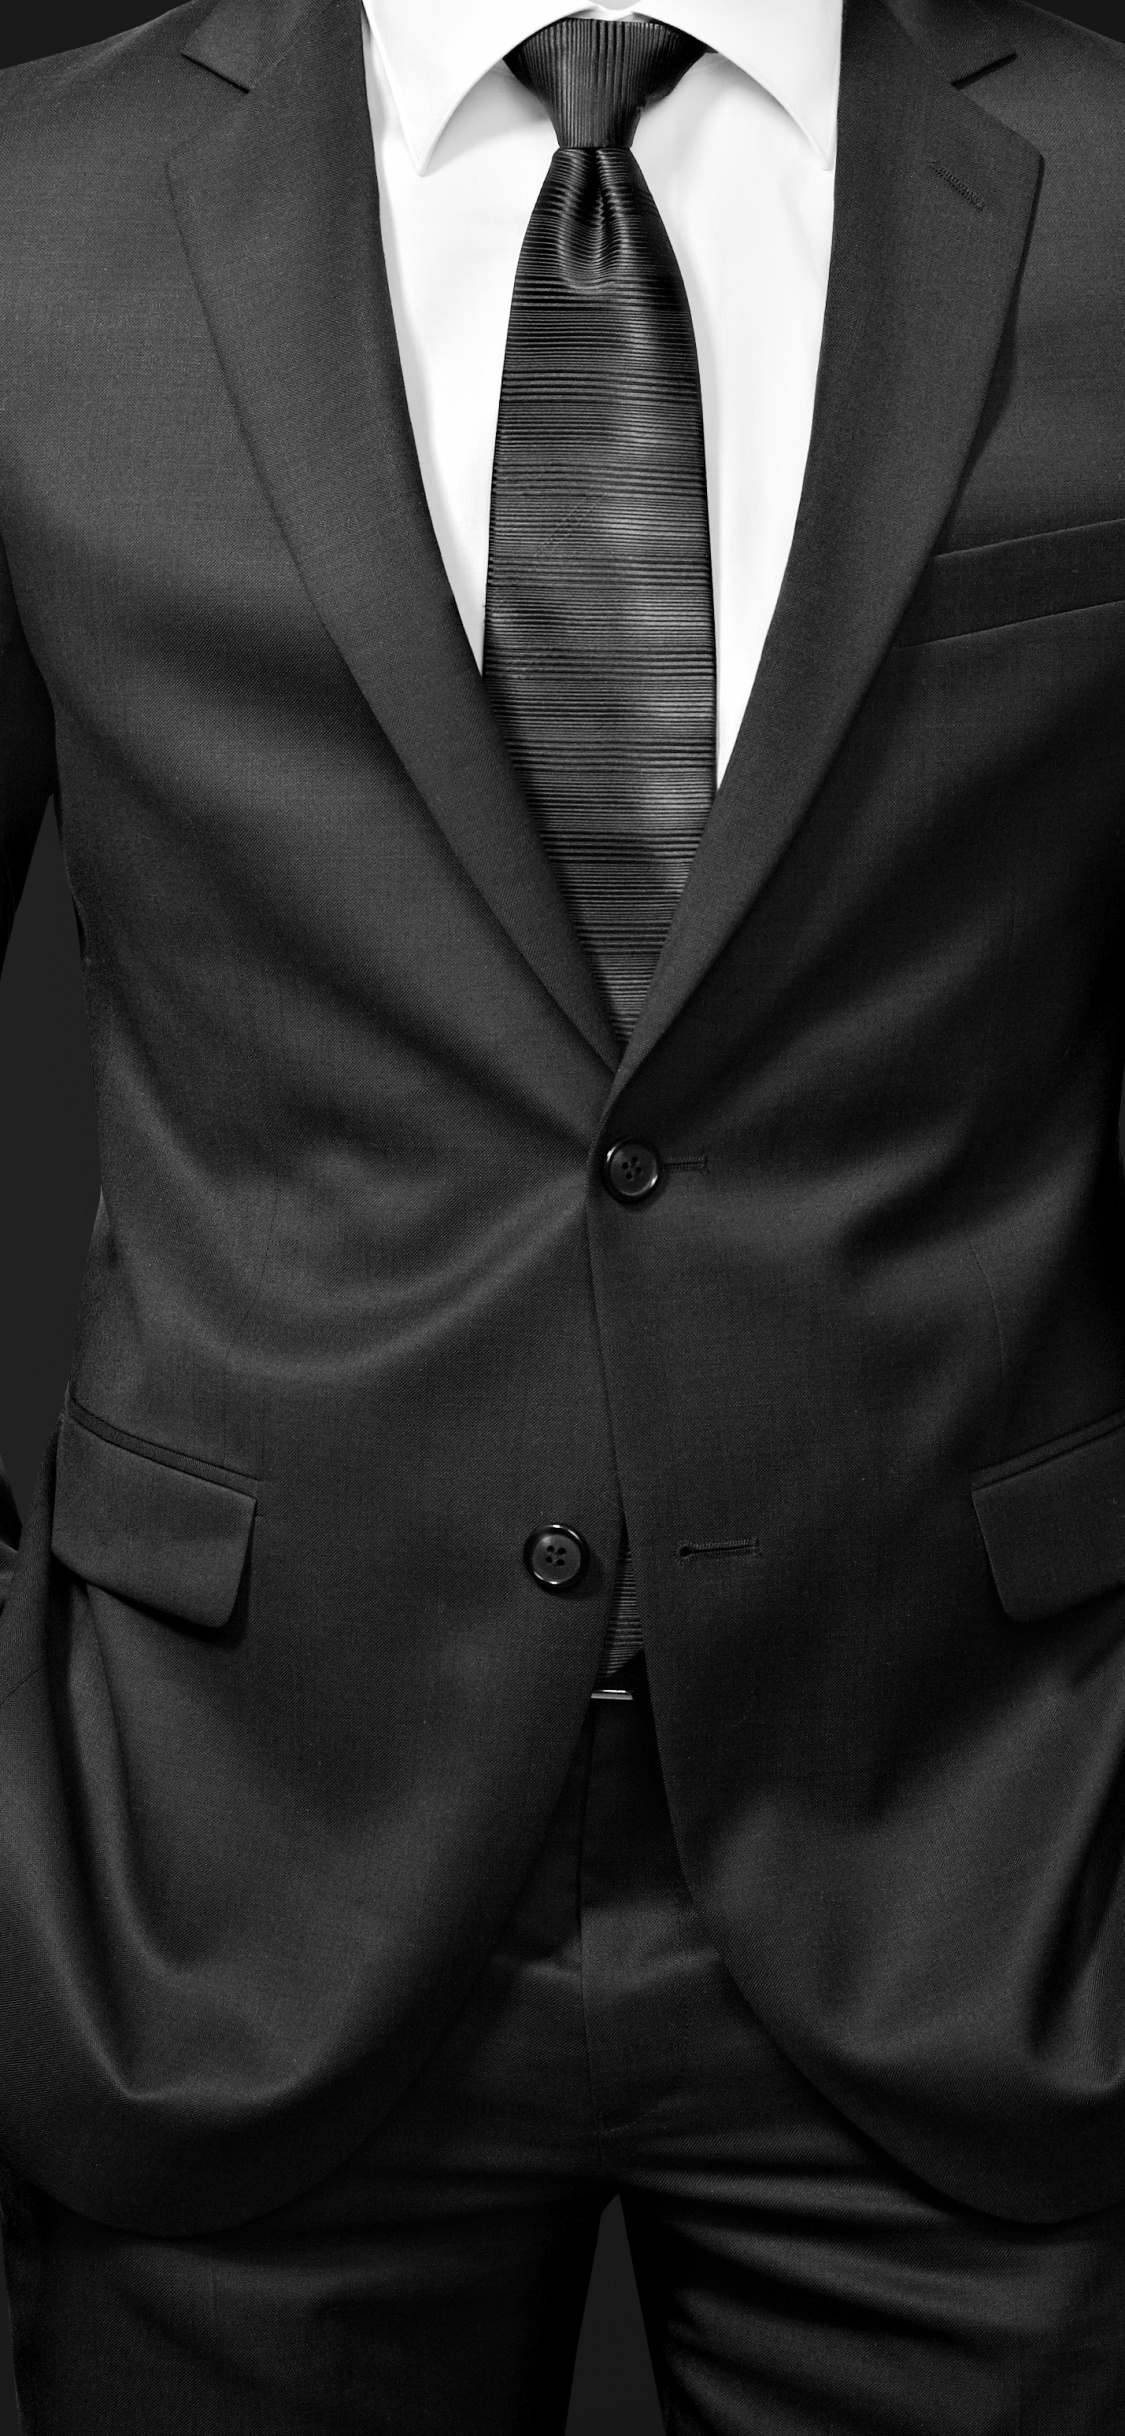 Homme en Veste de Costume Noir. Wallpaper in 1125x2436 Resolution